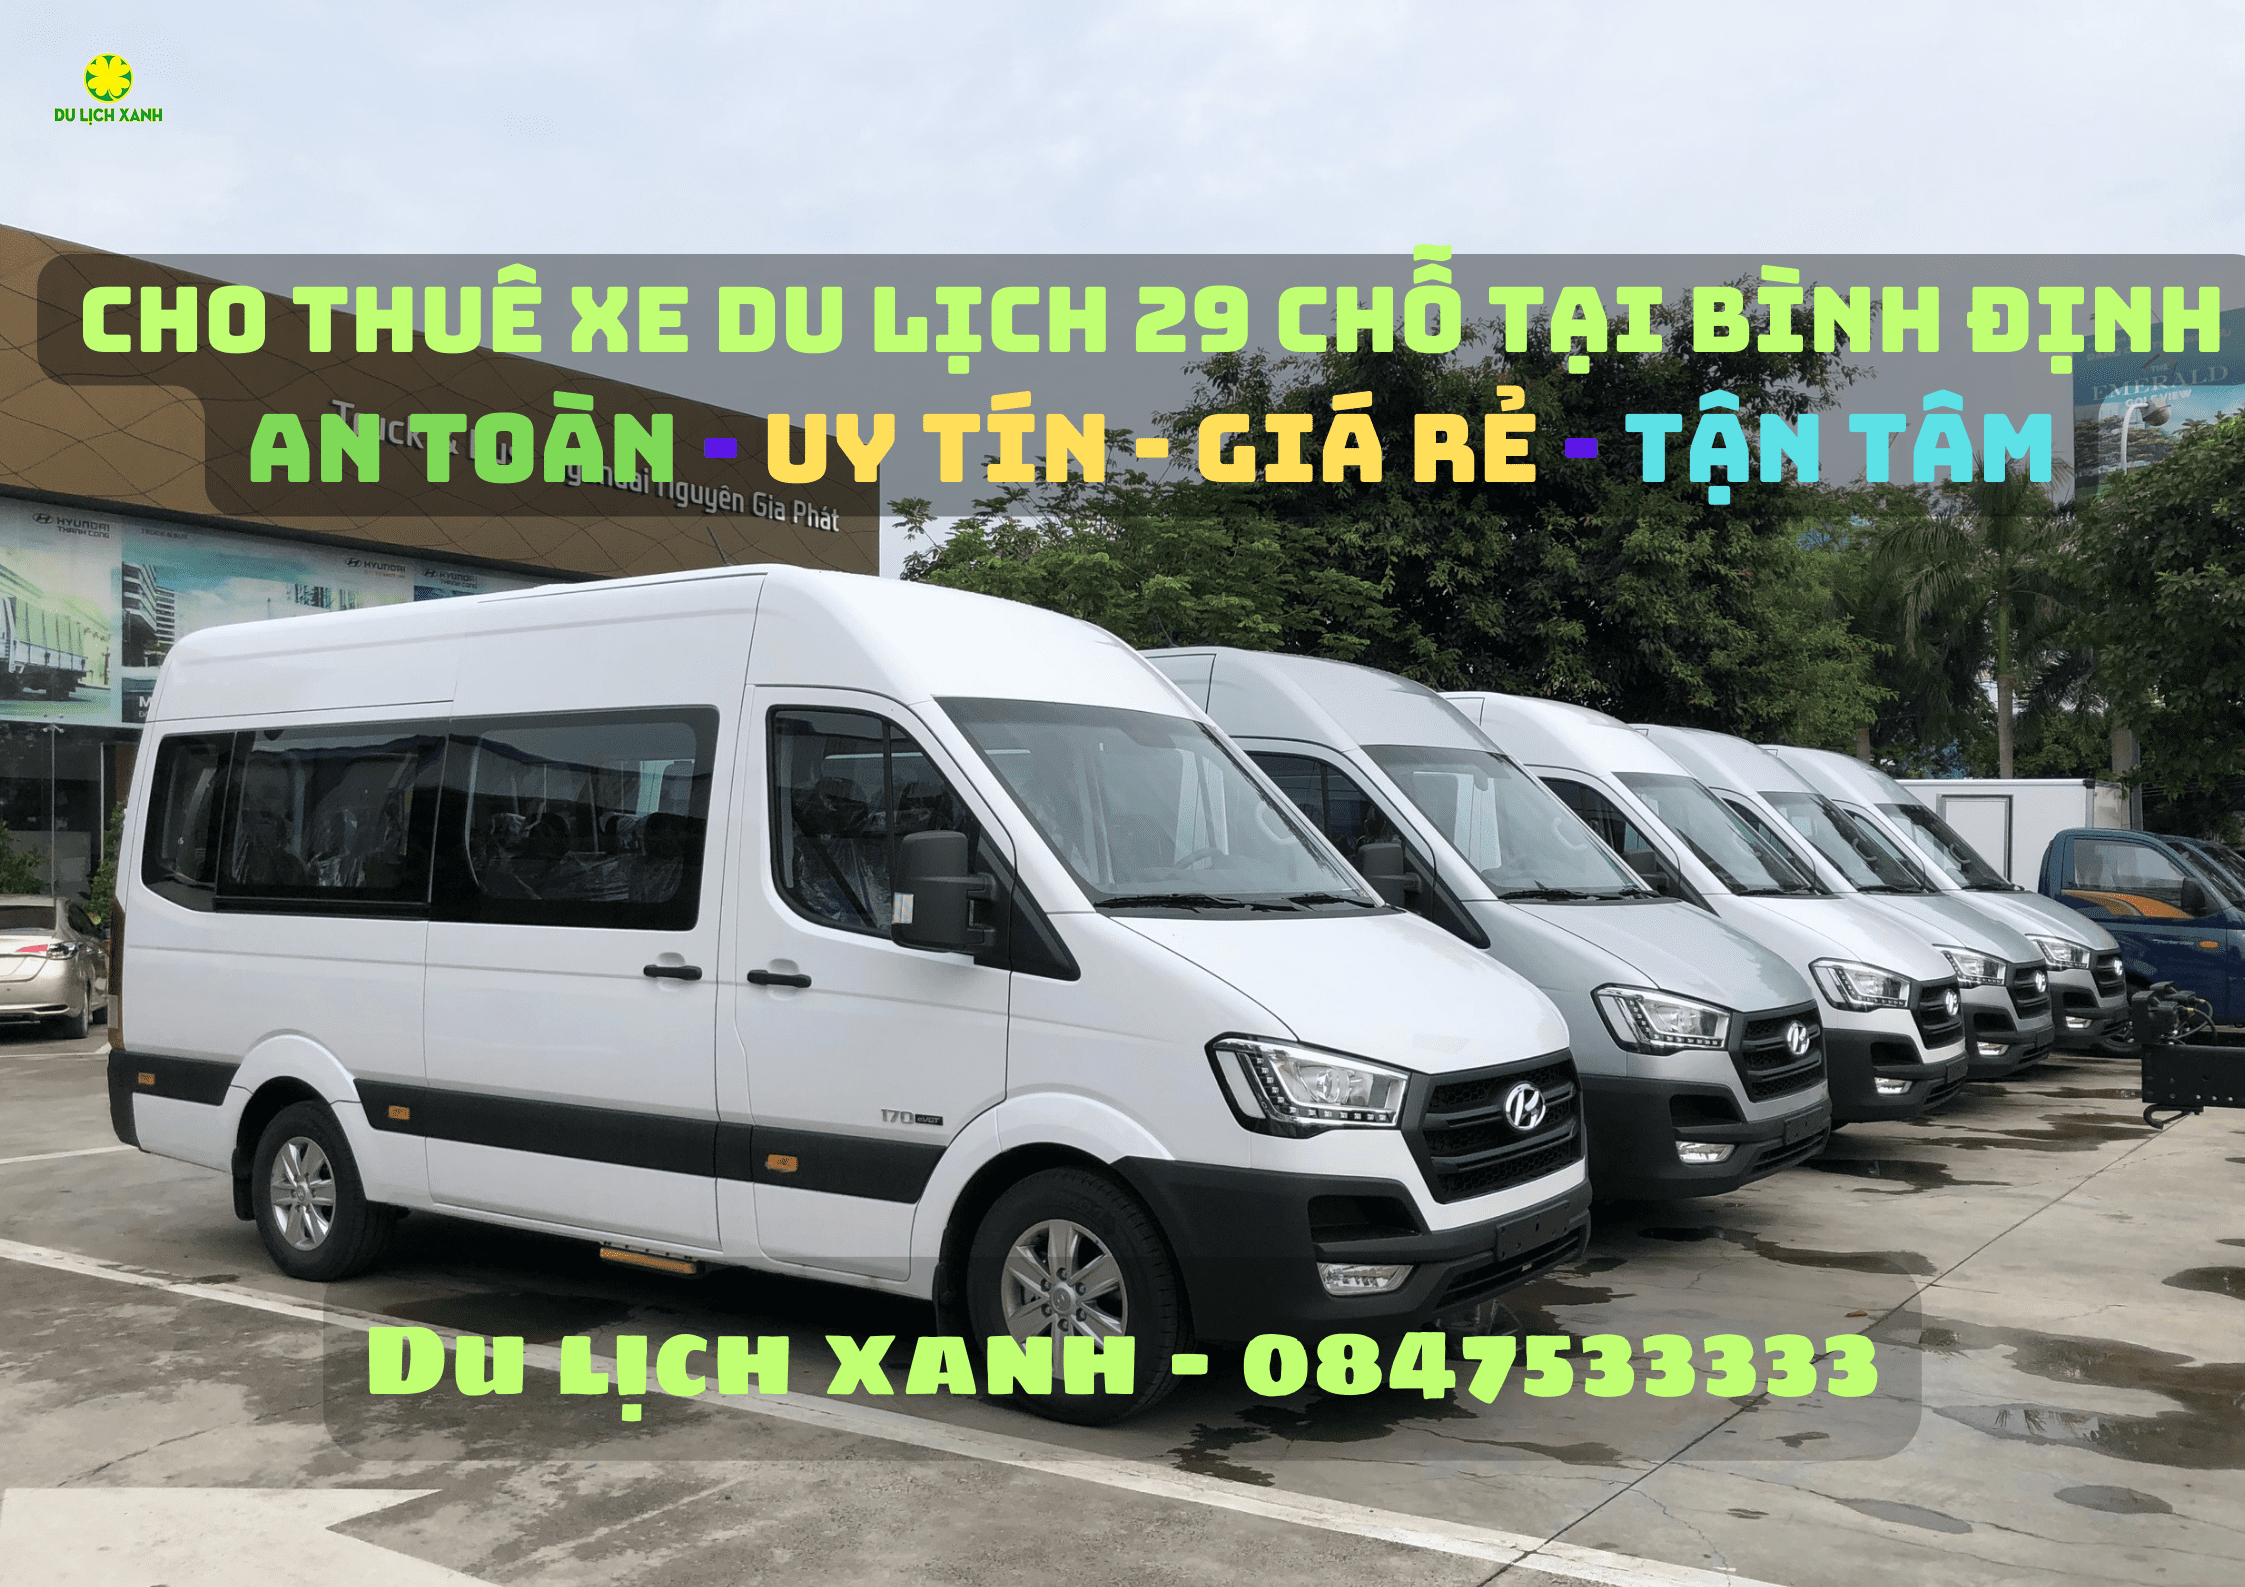 Dịch vụ cho thuê xe du lịch 16 chỗ tại Bình Định